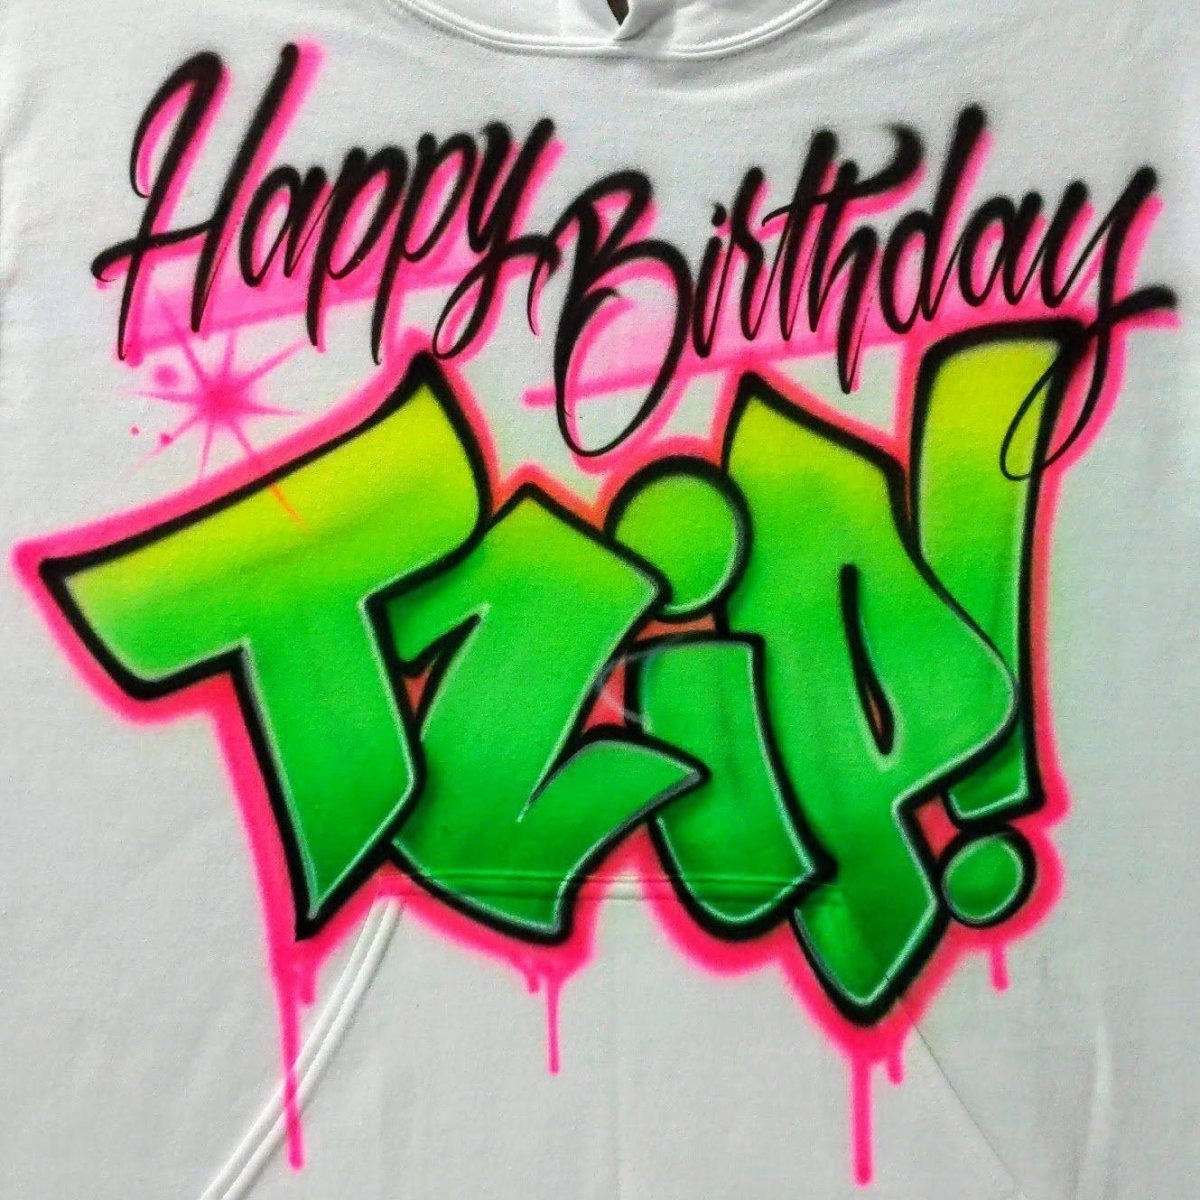 Birthday Graffiti Customizable Airbrush T shirt Design from Airbrush Customs x Dale The Airbrush Guy